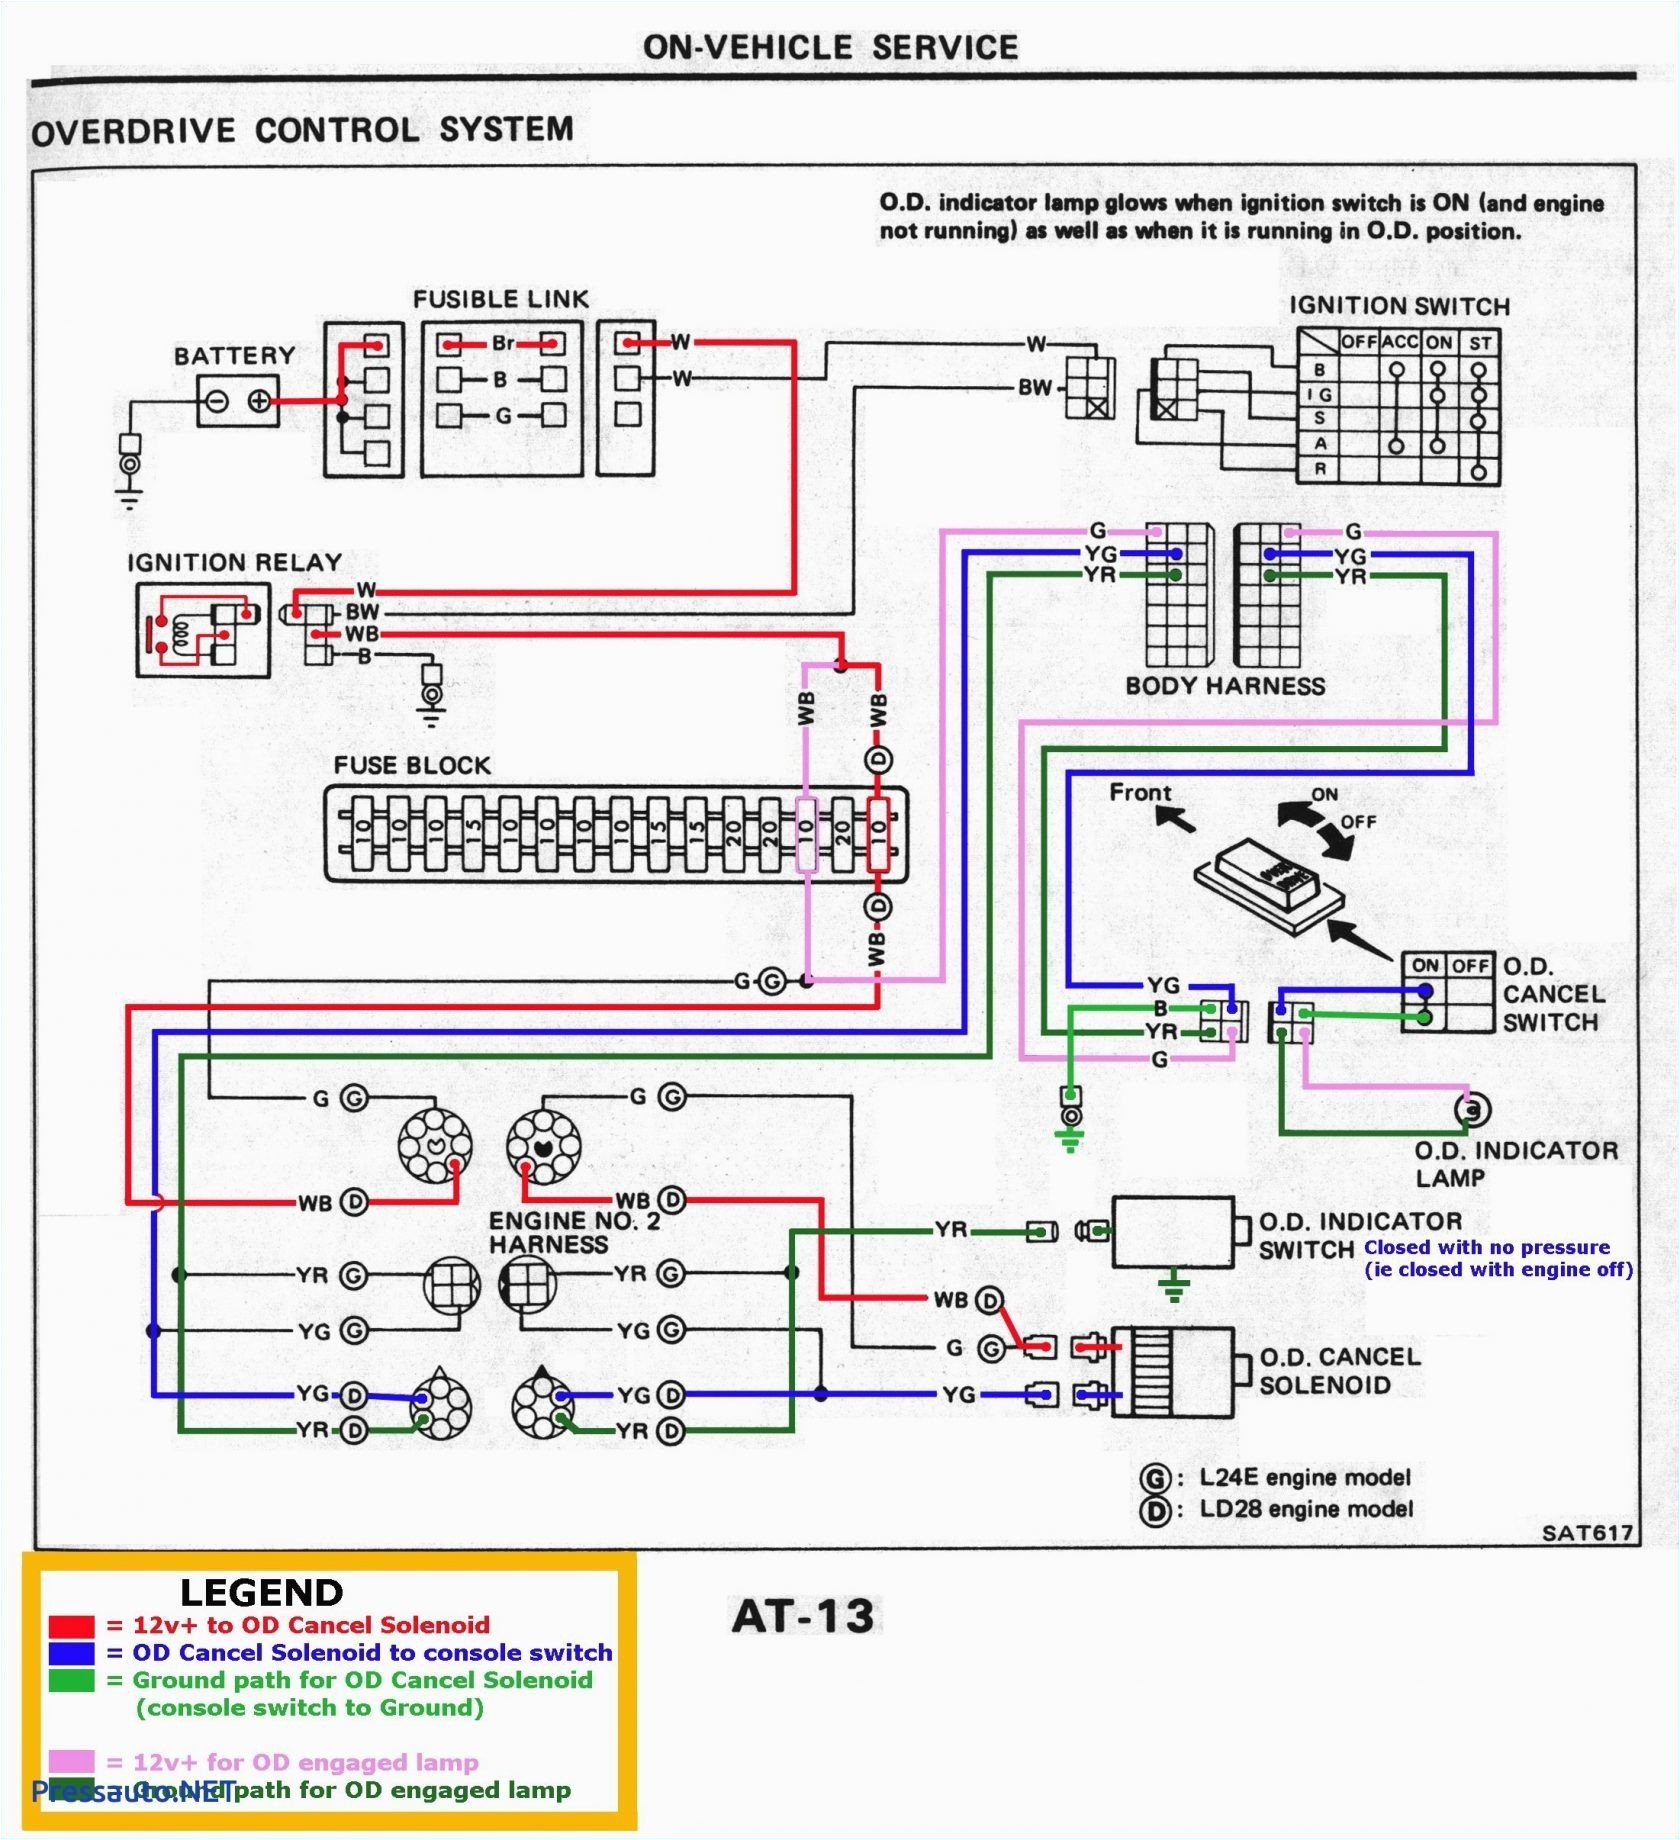 fan clutch 2002 kenworth wiring diagram wiring diagram view fan clutch 2002 kenworth wiring diagram